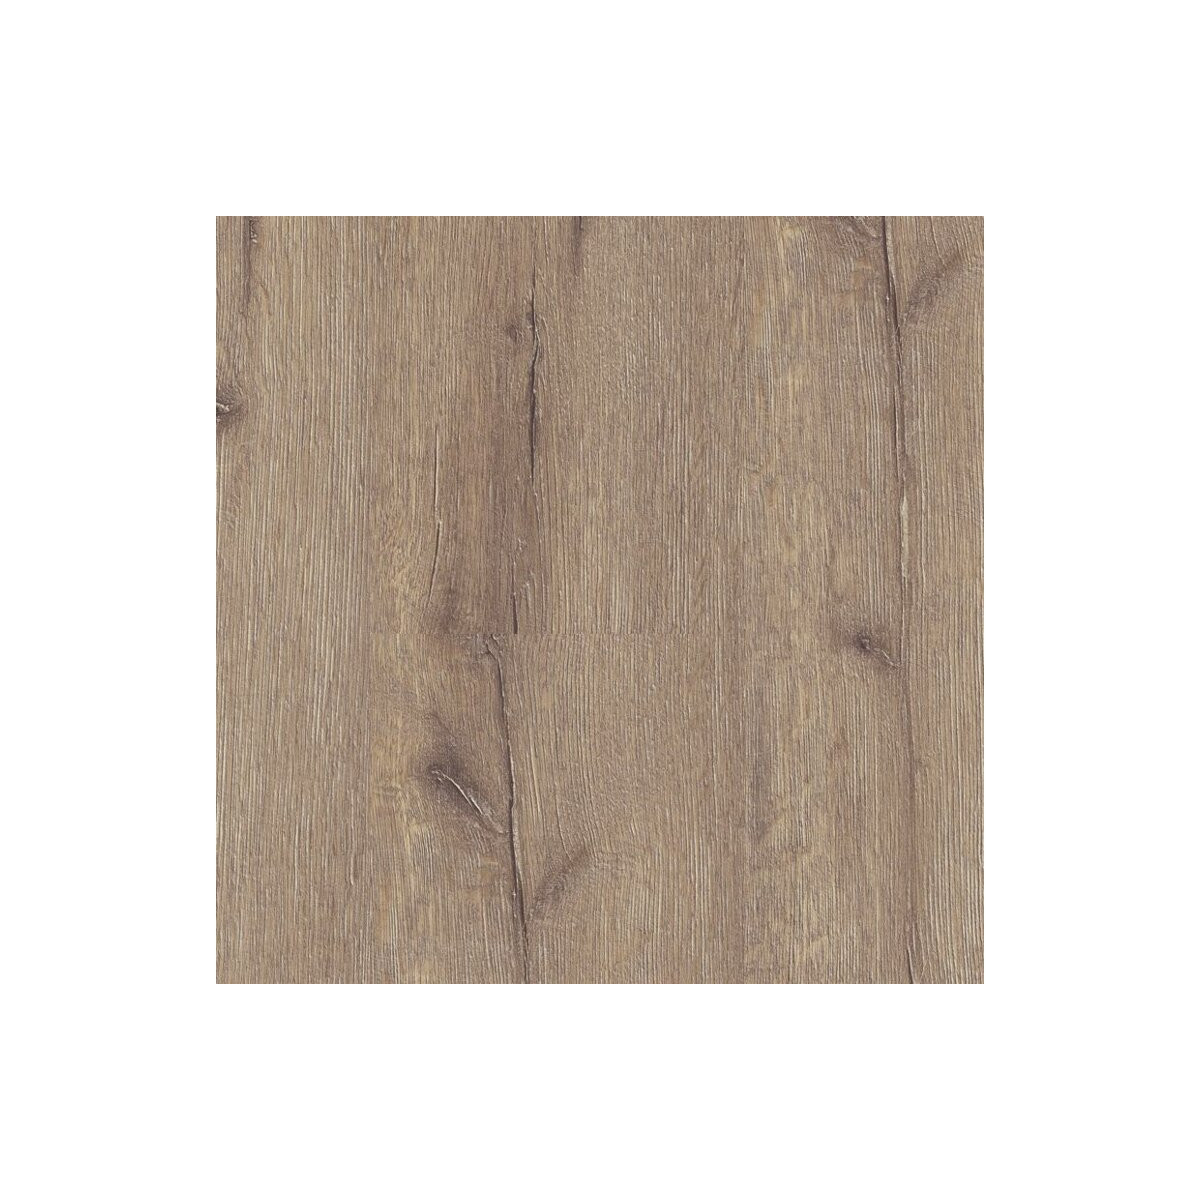 Laminátová podlaha Swiss Noblesse 3044 Rift Oak